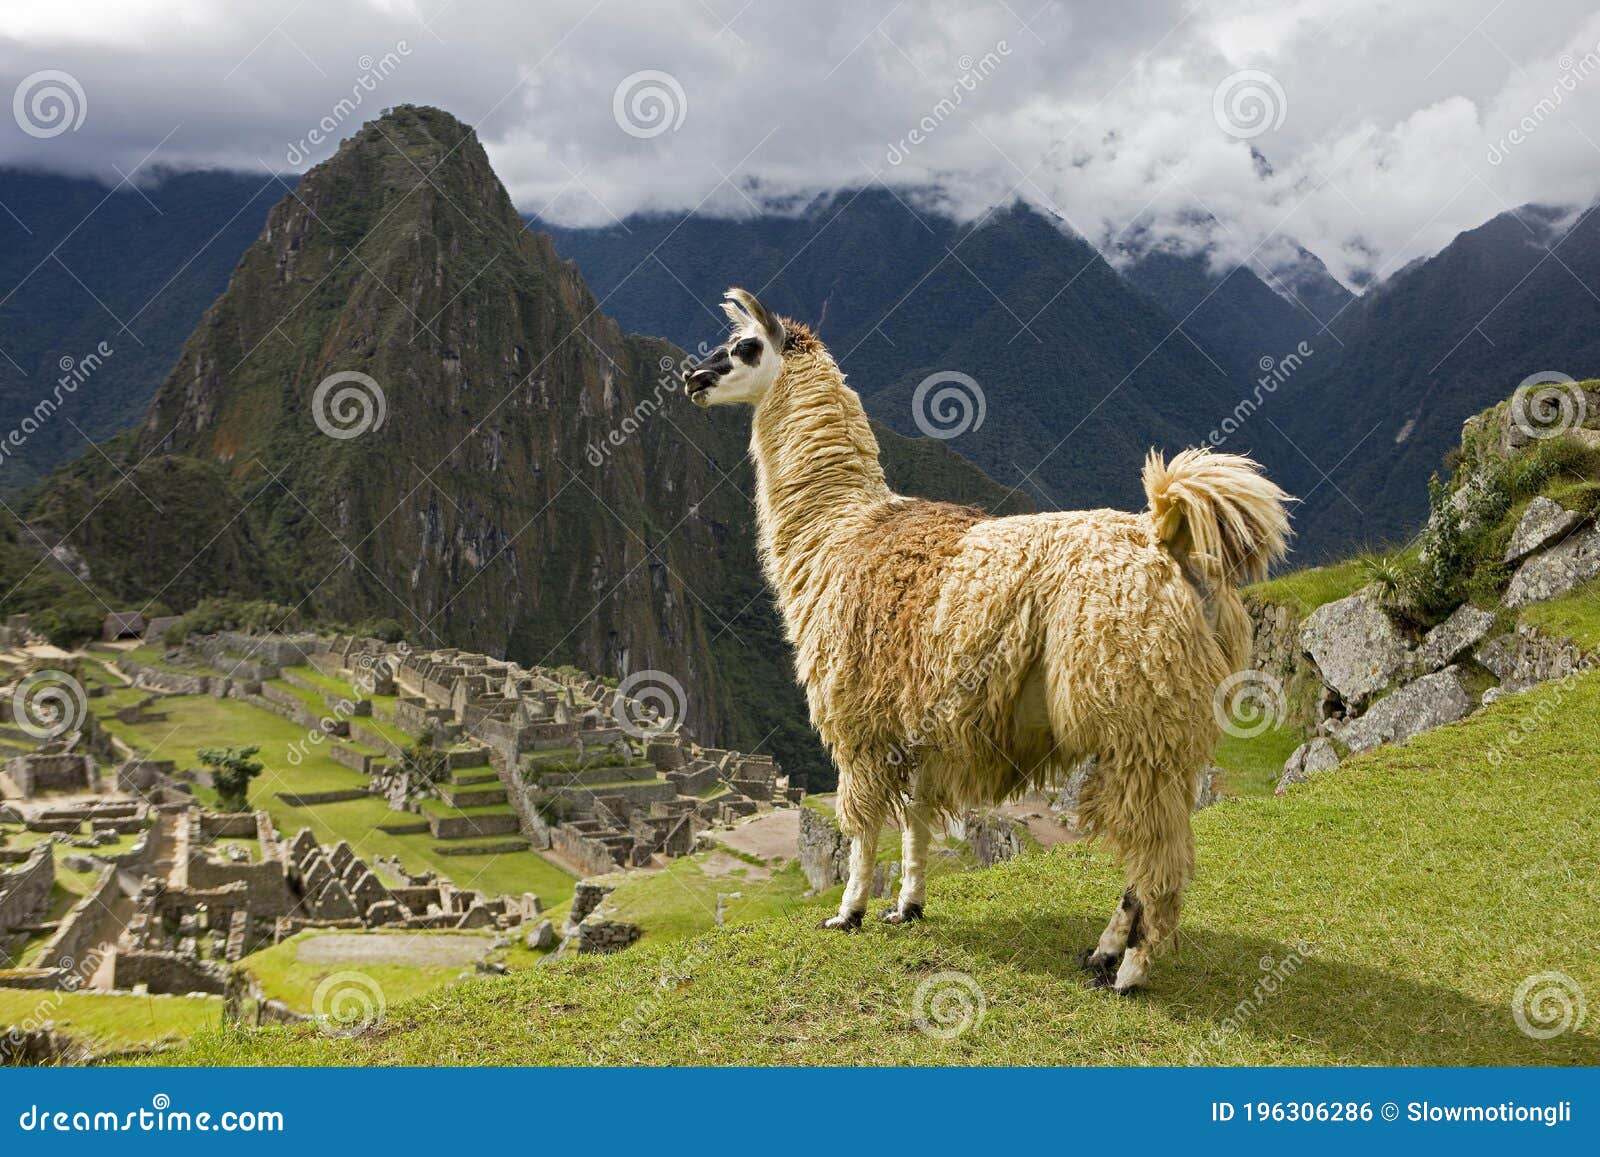 llama, lama glama, adult in the lost city of the incas, machu picchu in peru